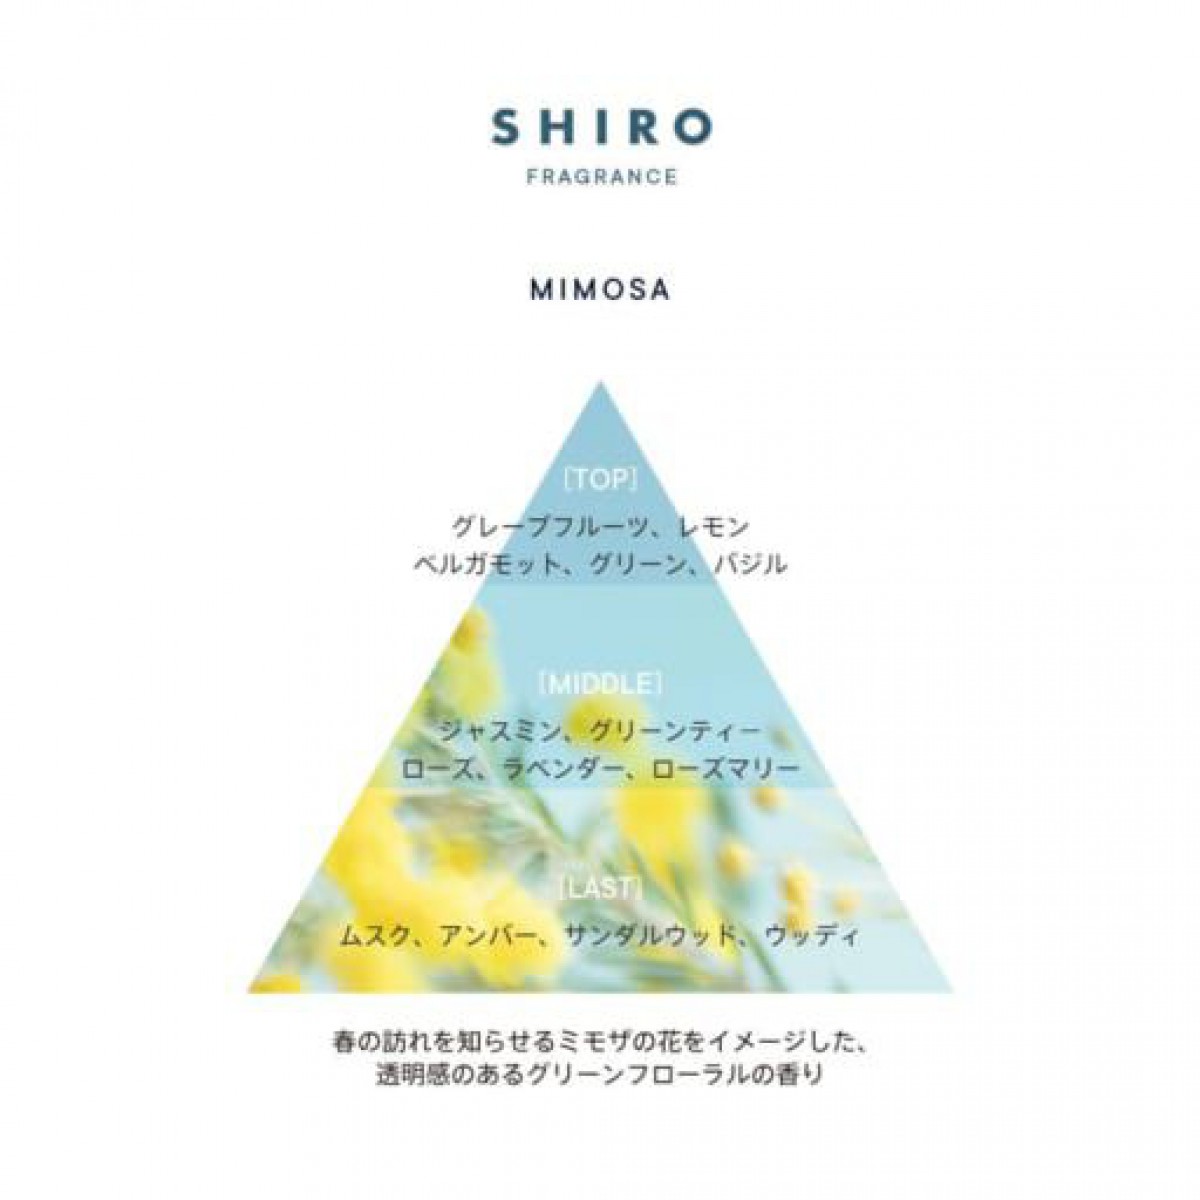 ヘアケアアイテム初登場【SHIRO】限定フレグランスシリーズに「ミモザ」が待望の復活